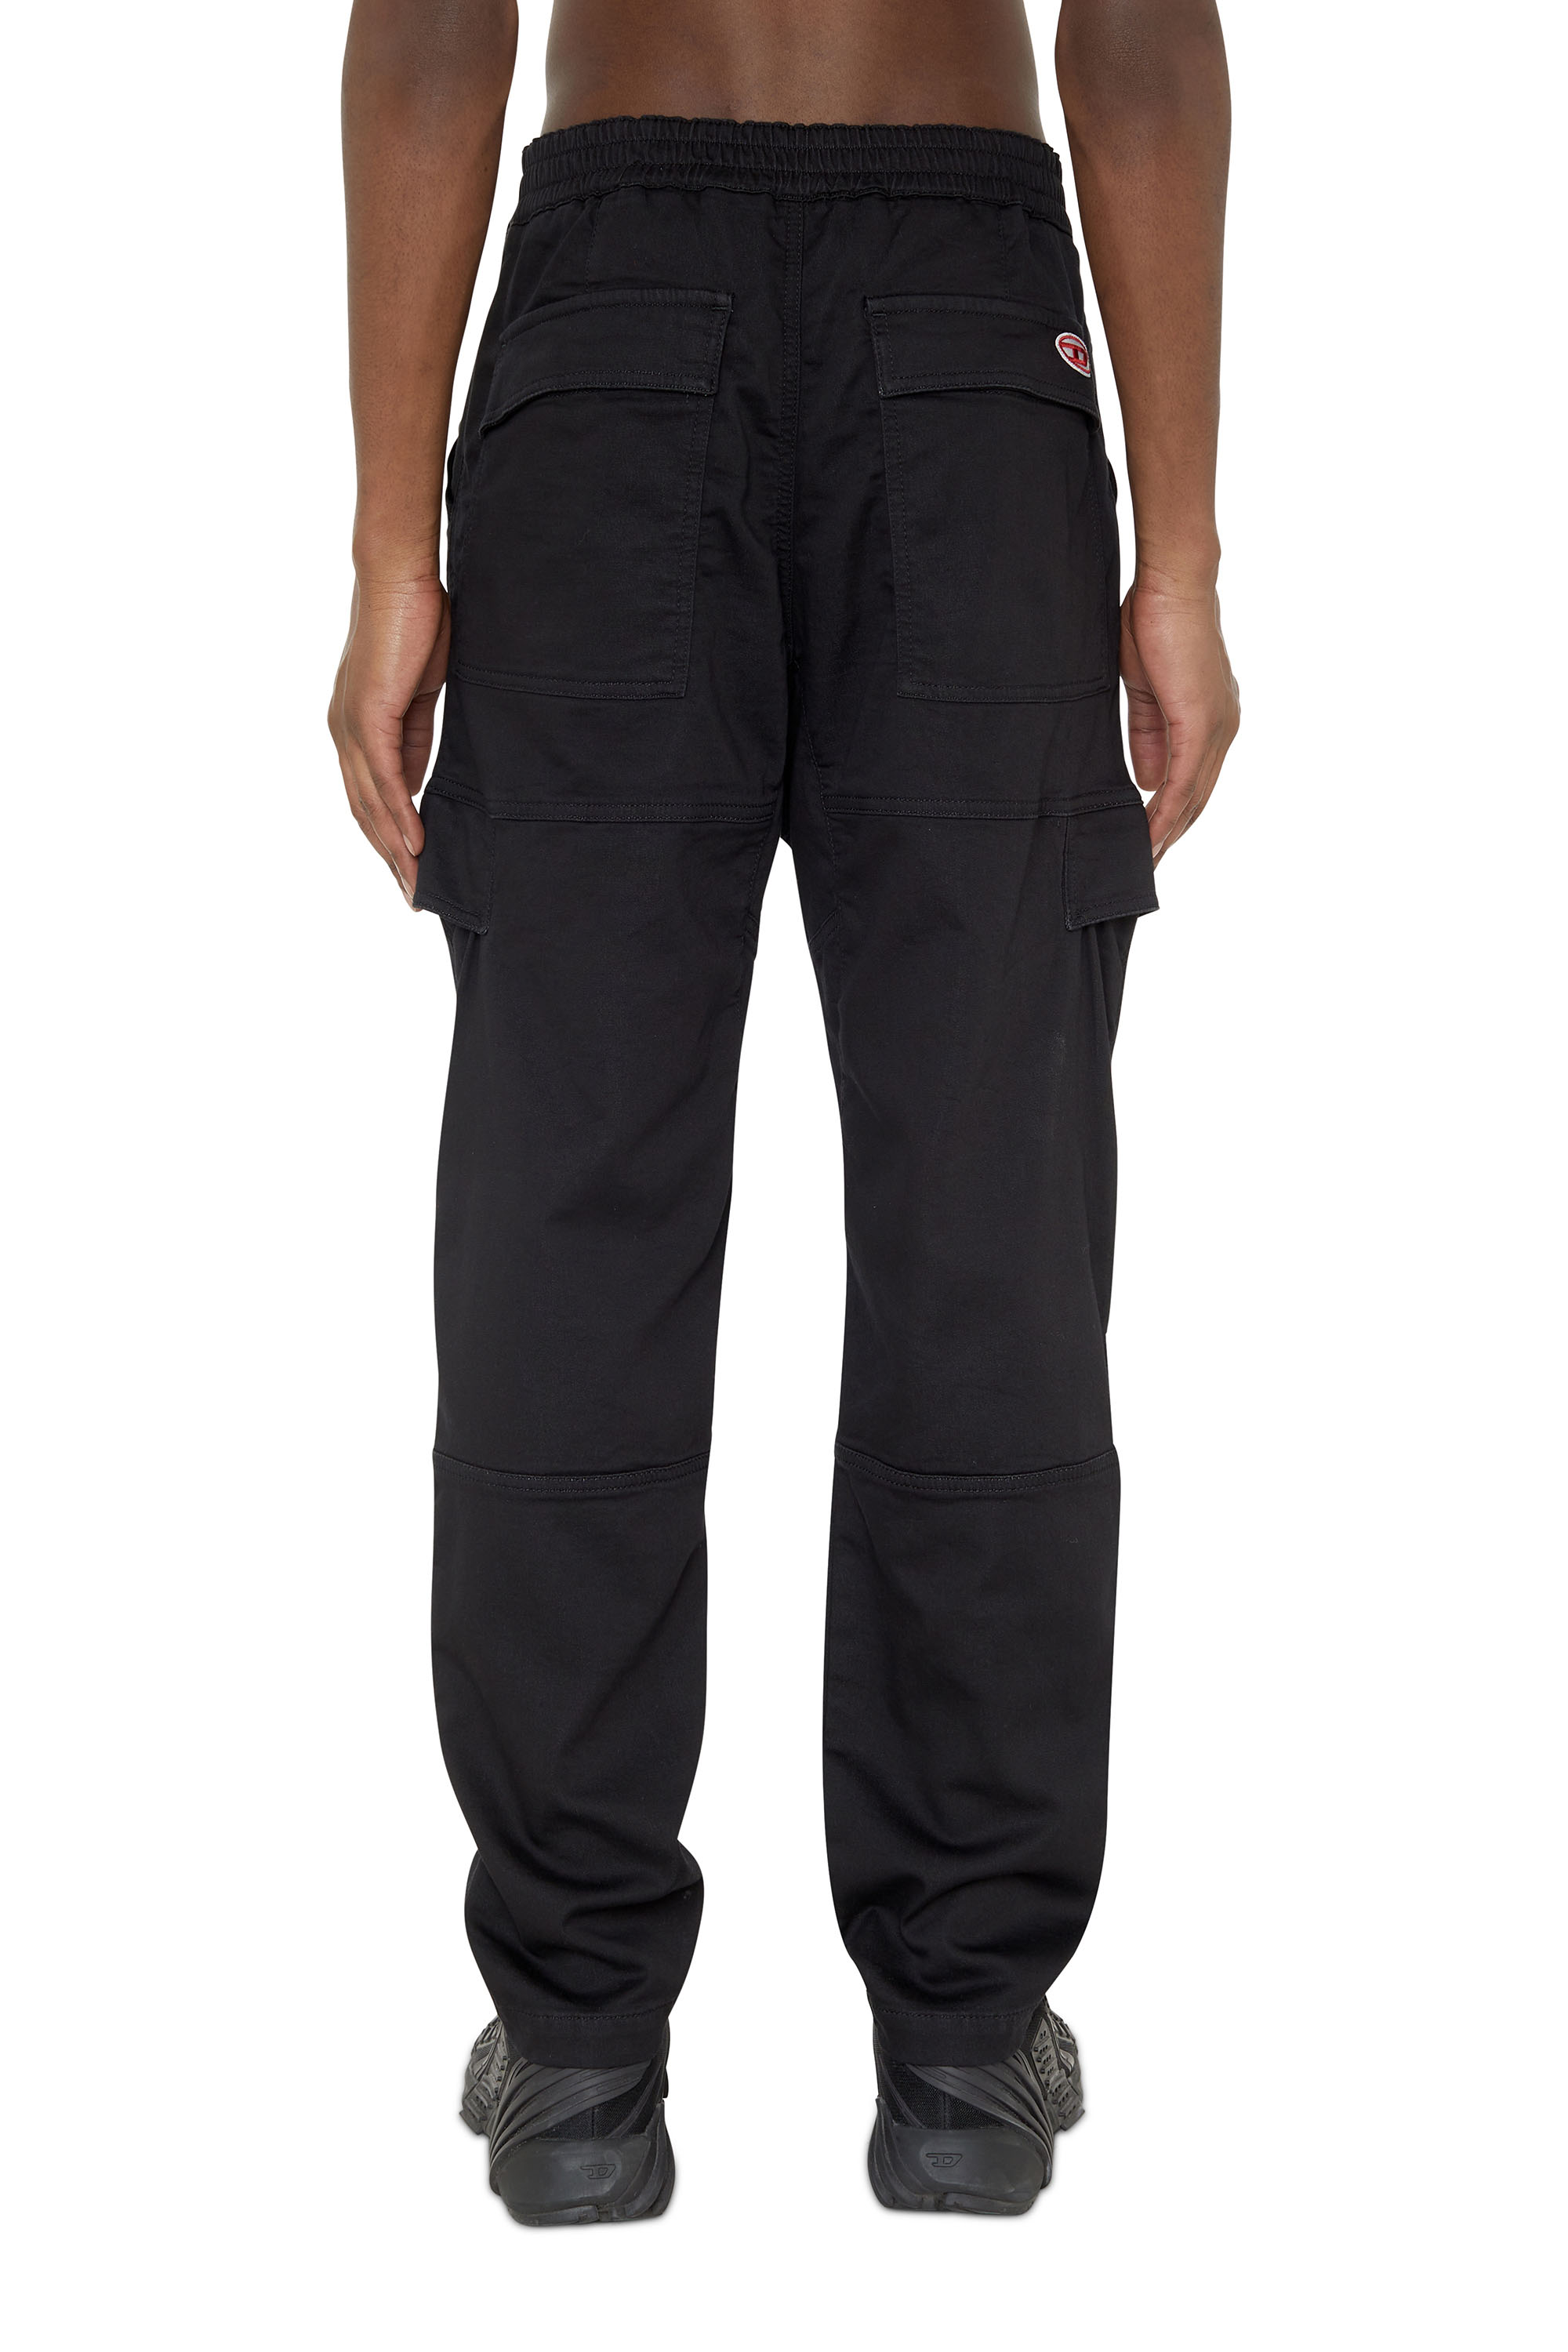 Diesel - Krooley JoggJeans® 069ZG Tapered, Black/Dark grey - Image 3